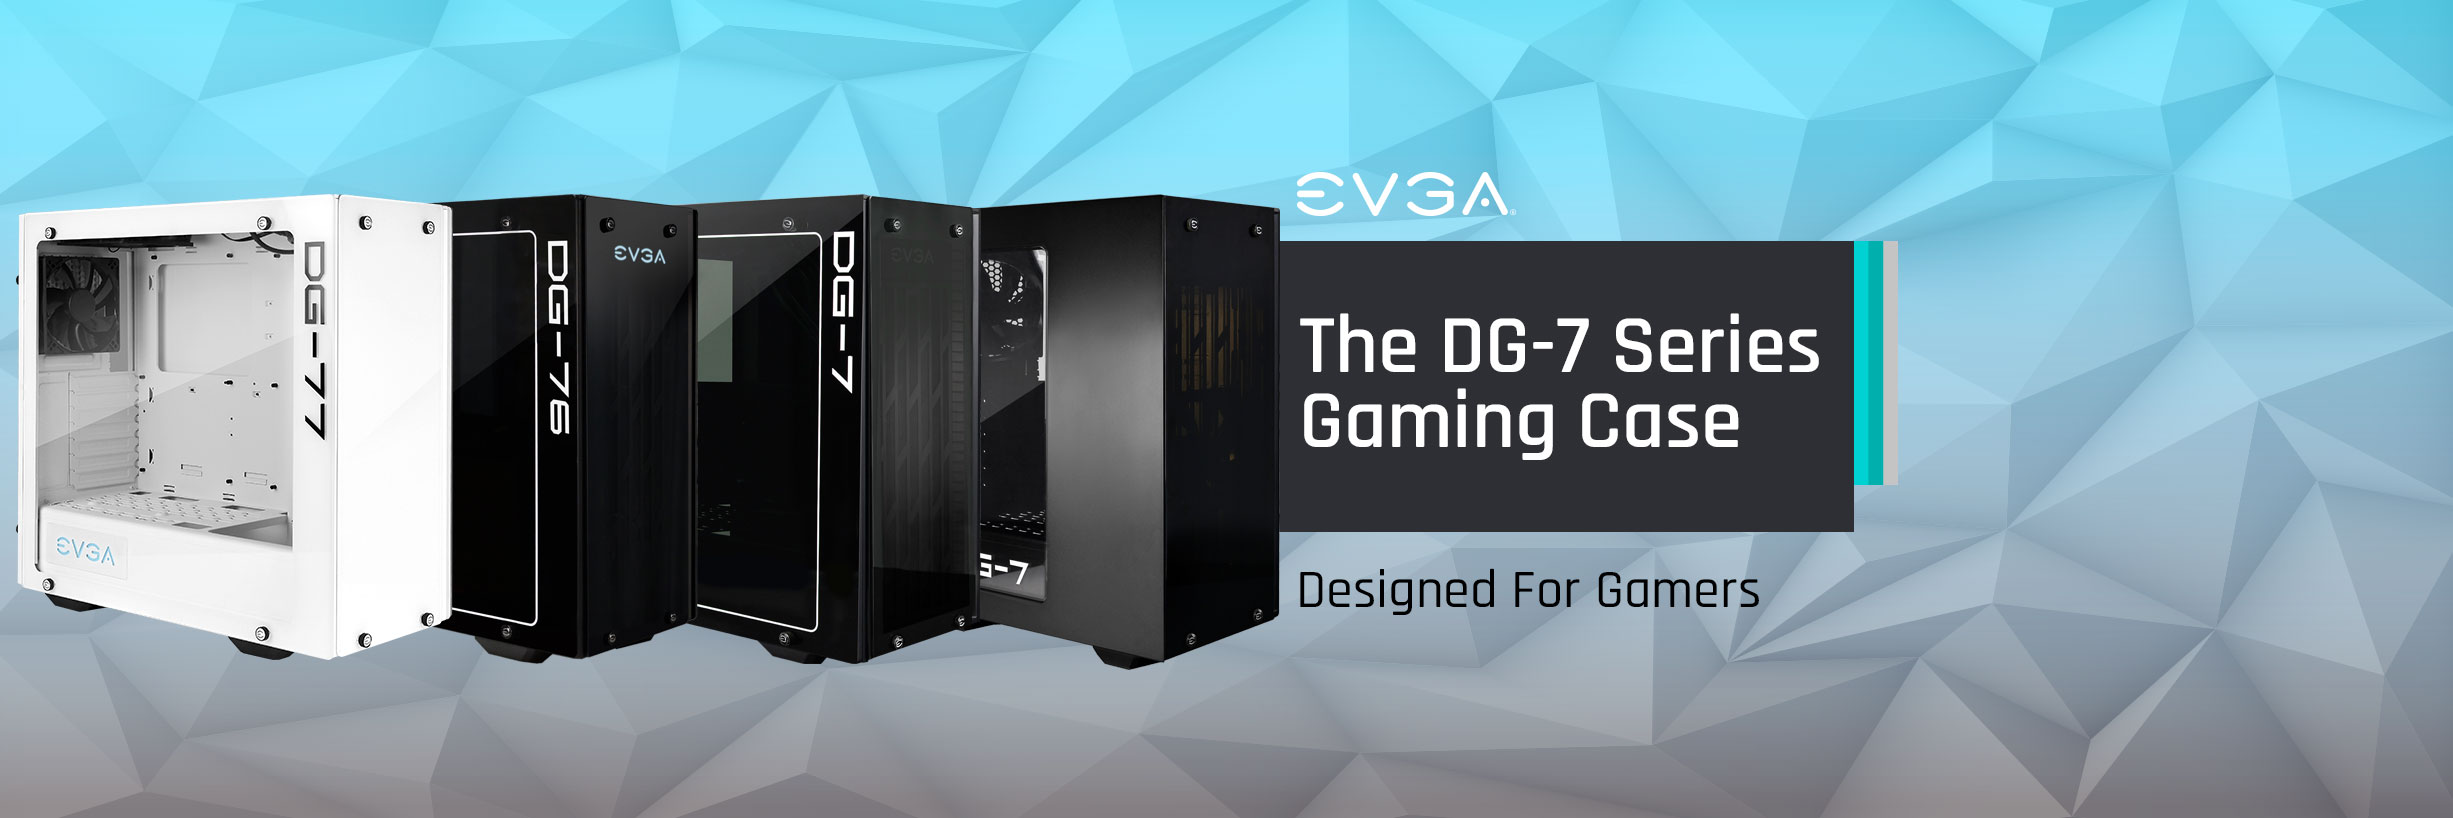 EVGA DG-7 Gaming Cases